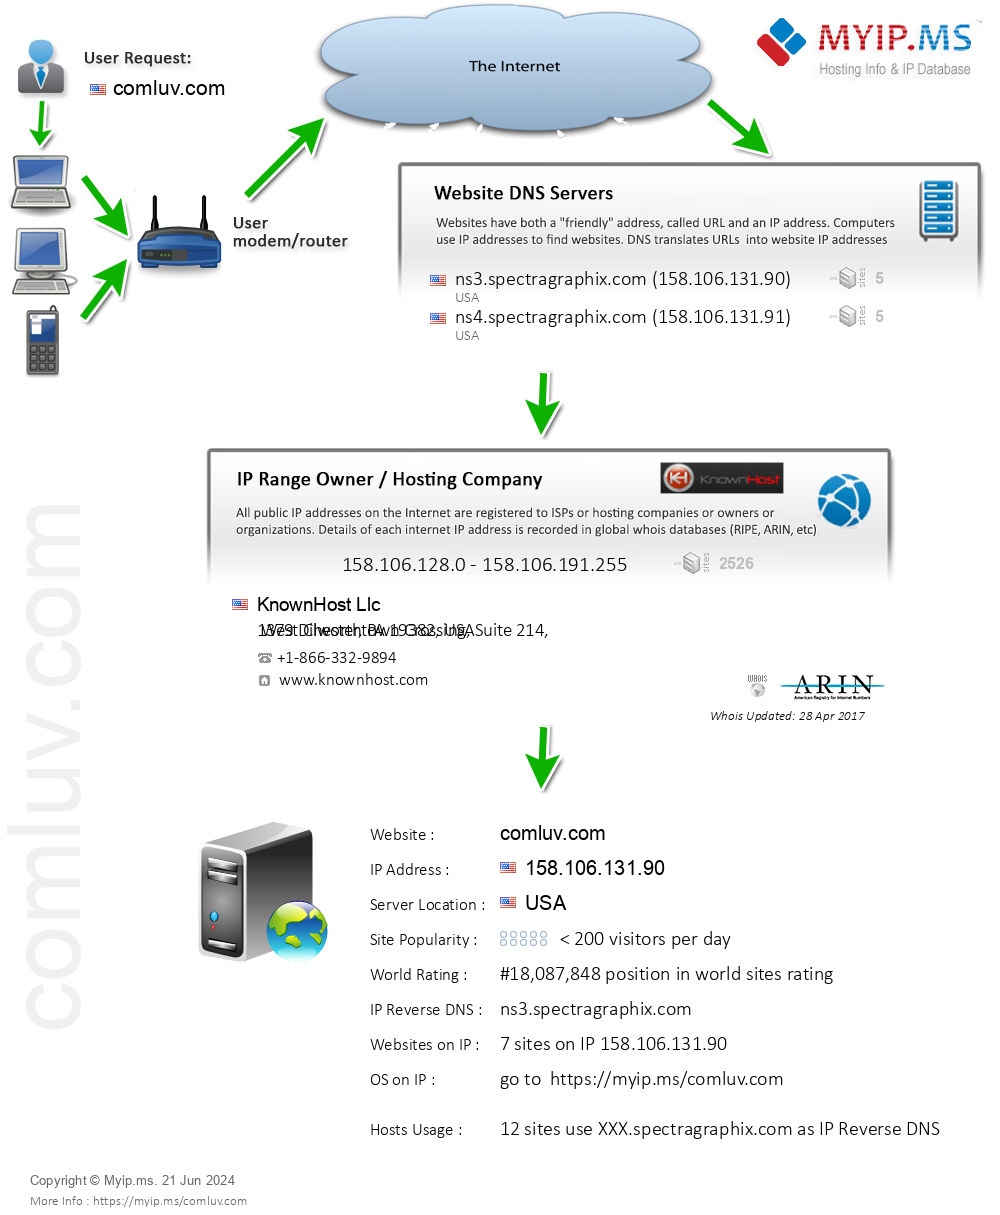 Comluv.com - Website Hosting Visual IP Diagram